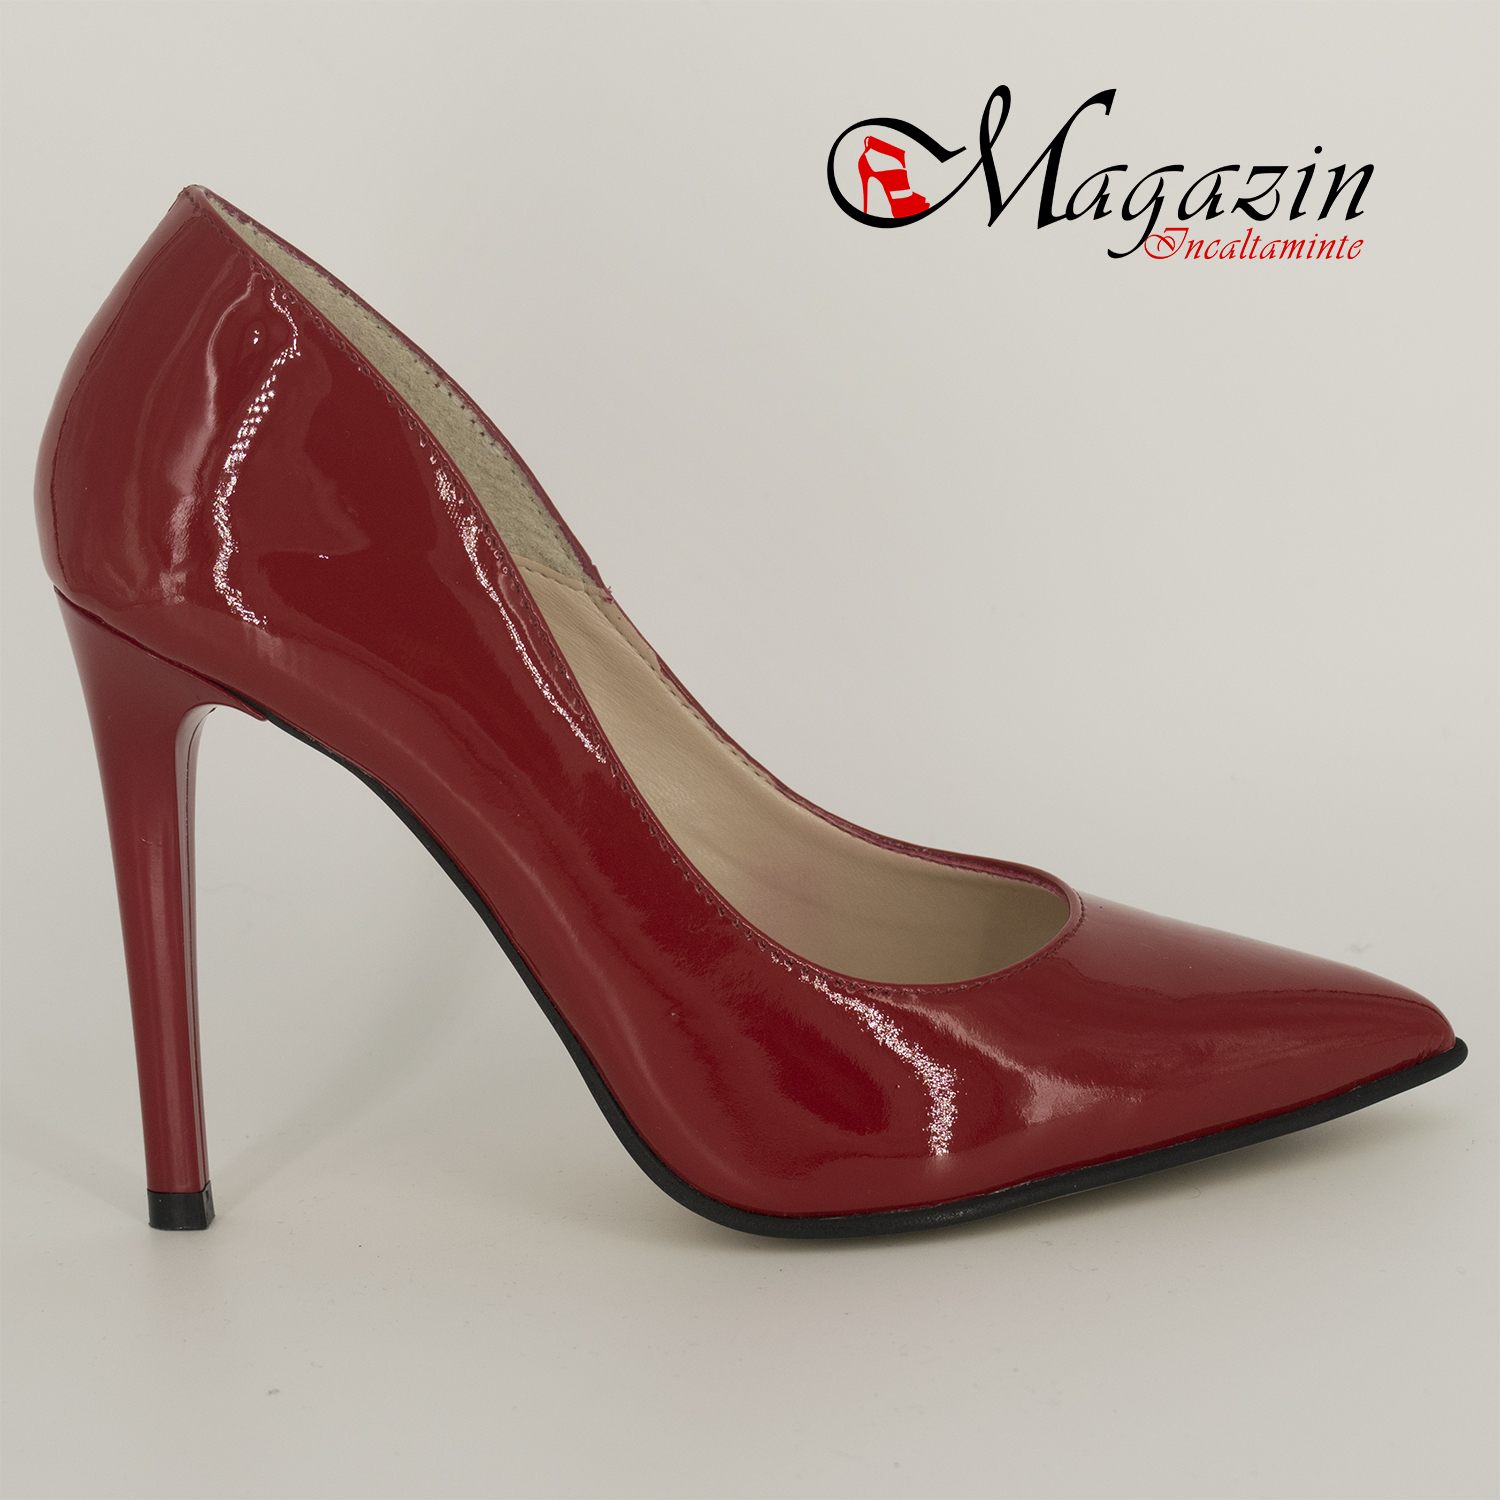 Pantofi Stiletto rosii din Piele Naturala - Giulio 016-744R